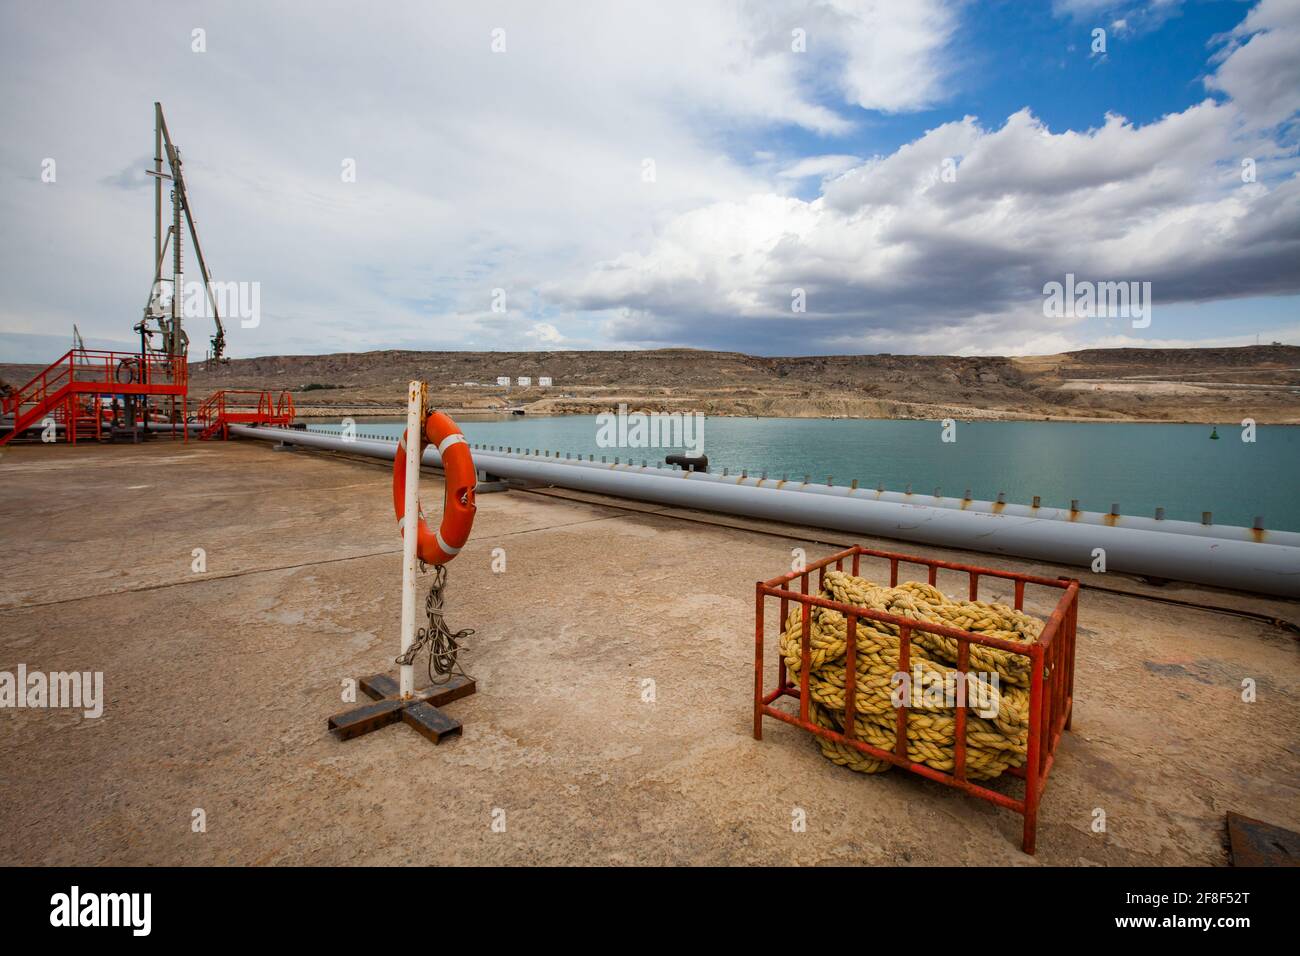 Terminale di riempimento dell'olio per navi cisterna. Articoli di sicurezza. Scale arancioni, balaustra e anello di vita. Pila di corda gialla. Acqua blu e cielo. Foto Stock